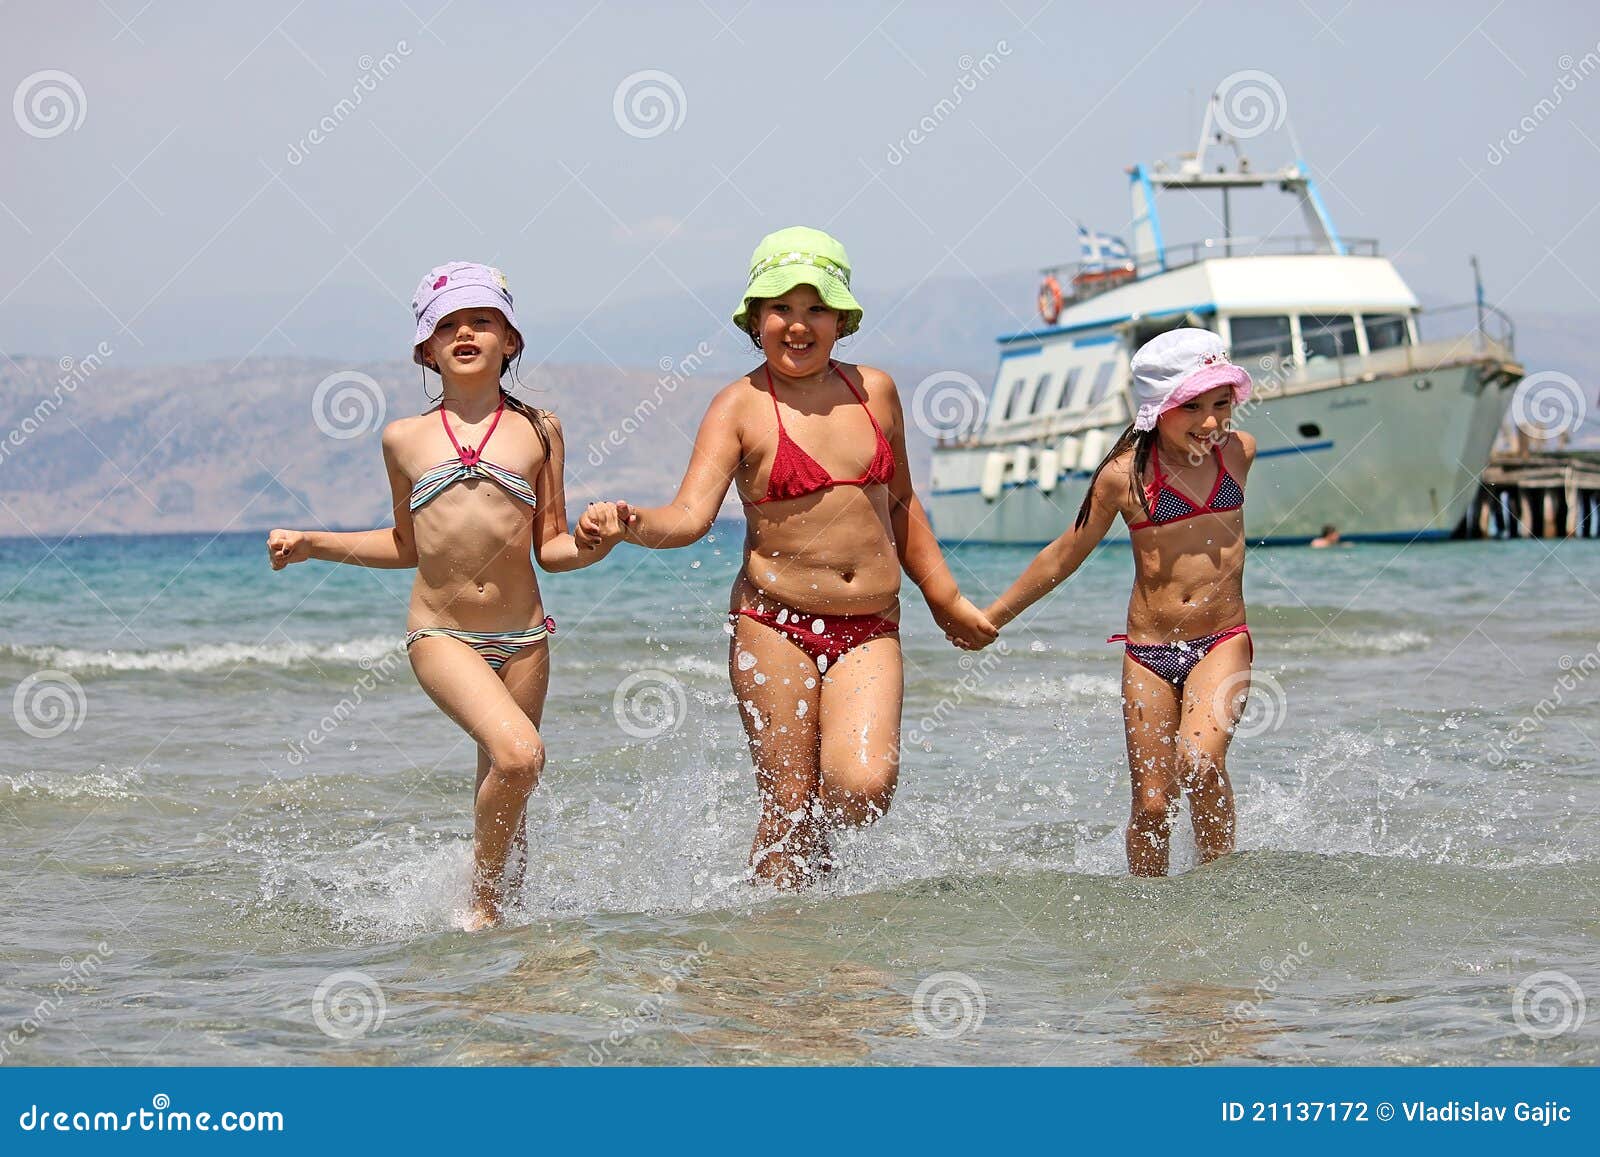 фото детей на голом пляже фото 113